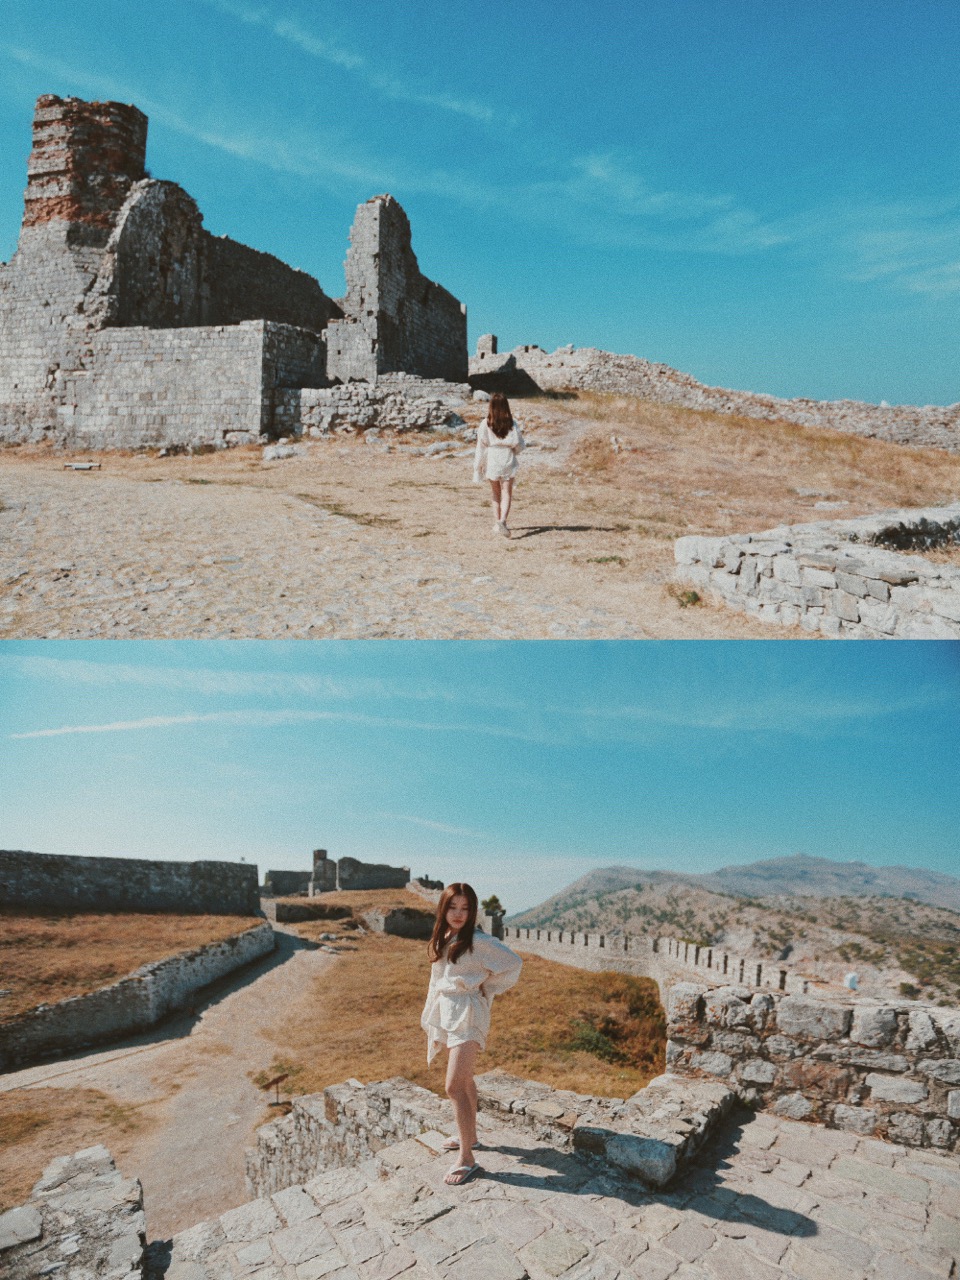 在阿尔巴尼亚荒无人烟的城堡废墟，随手按下快门都是苍凉的末日感。 这大概是个被人遗忘的国度——阿尔巴尼